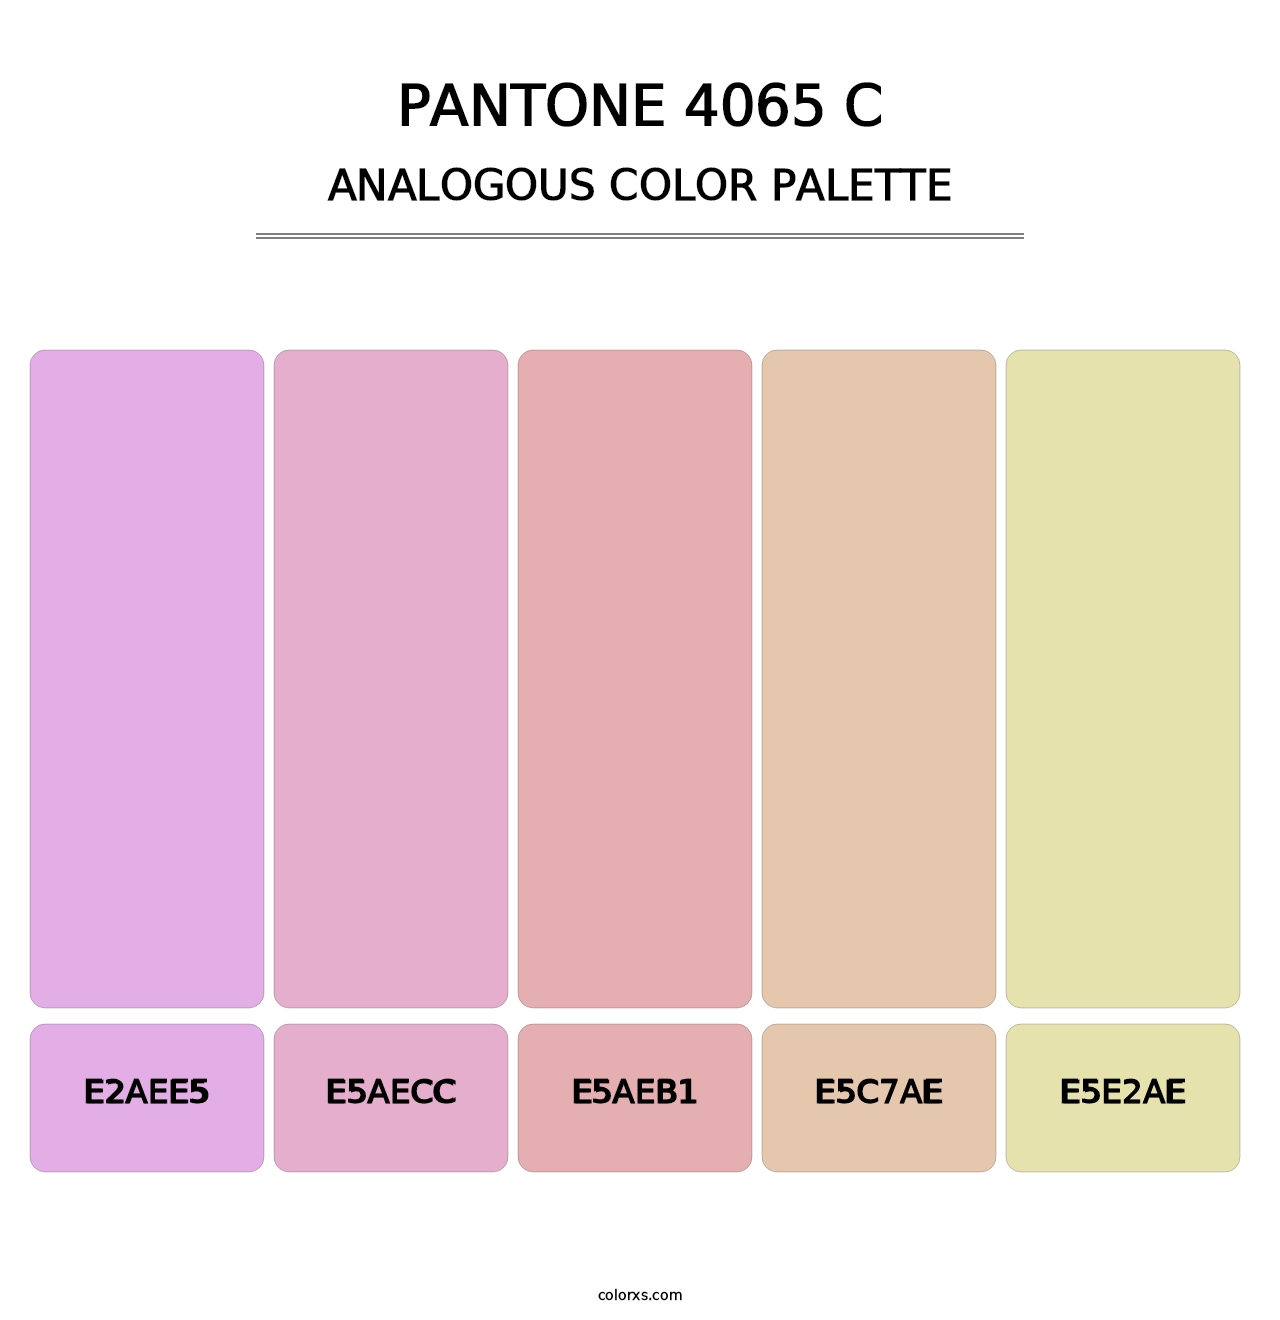 PANTONE 4065 C - Analogous Color Palette